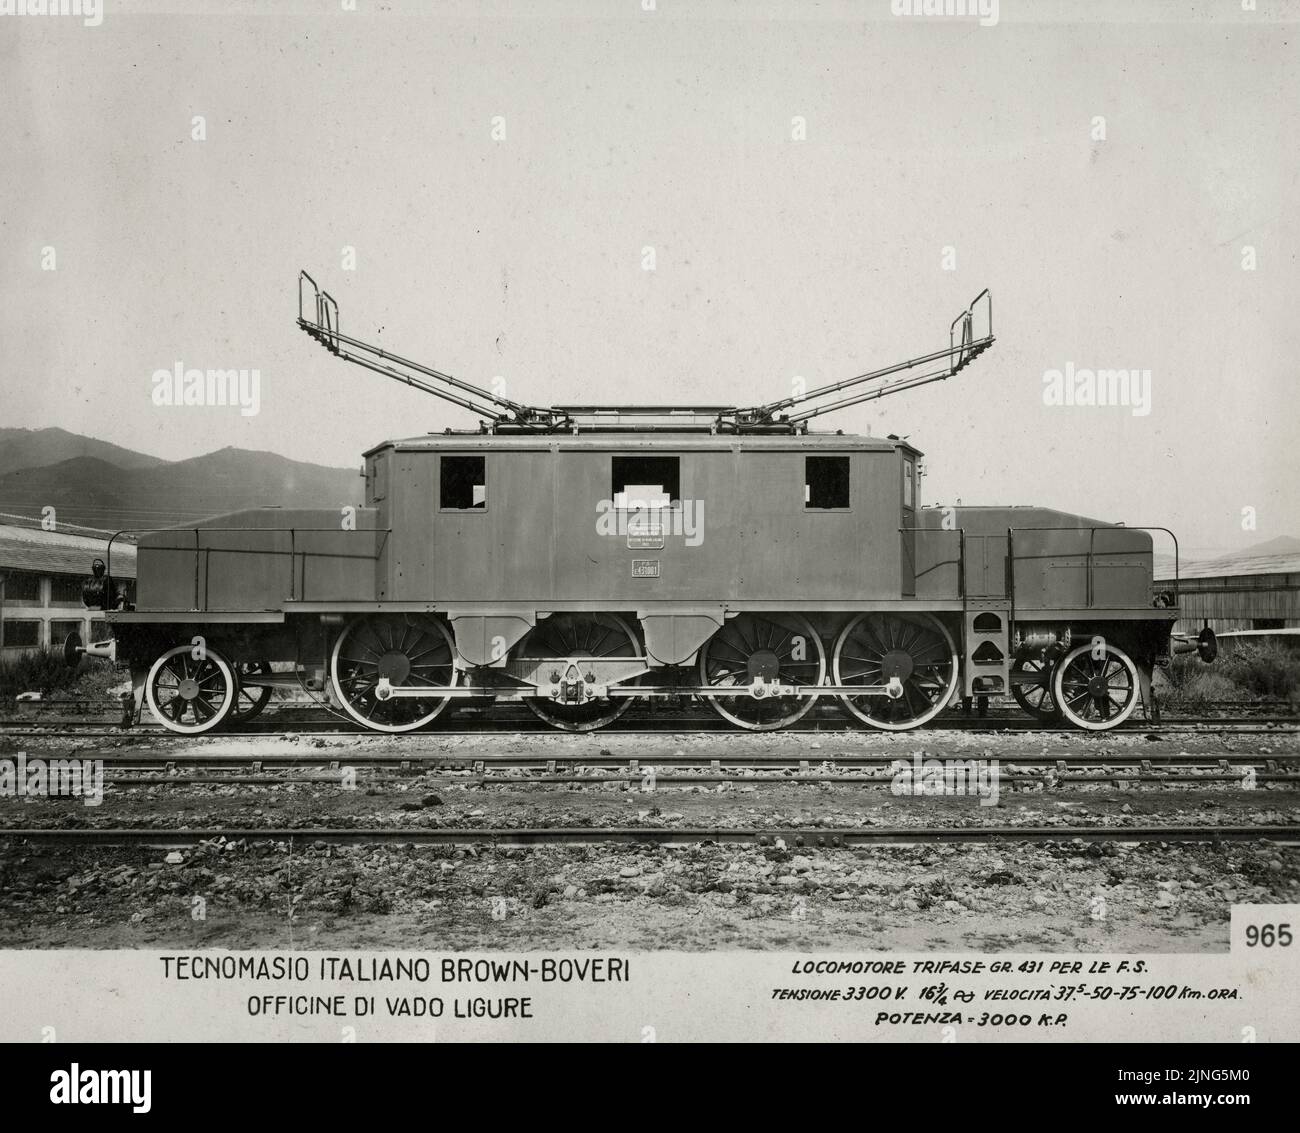 Treni e Tram - Locomotore Trifase GR 431 Tecnomasio Italiano Brown-Boveri Officine di Vado Ligure 1924 Stock Photo